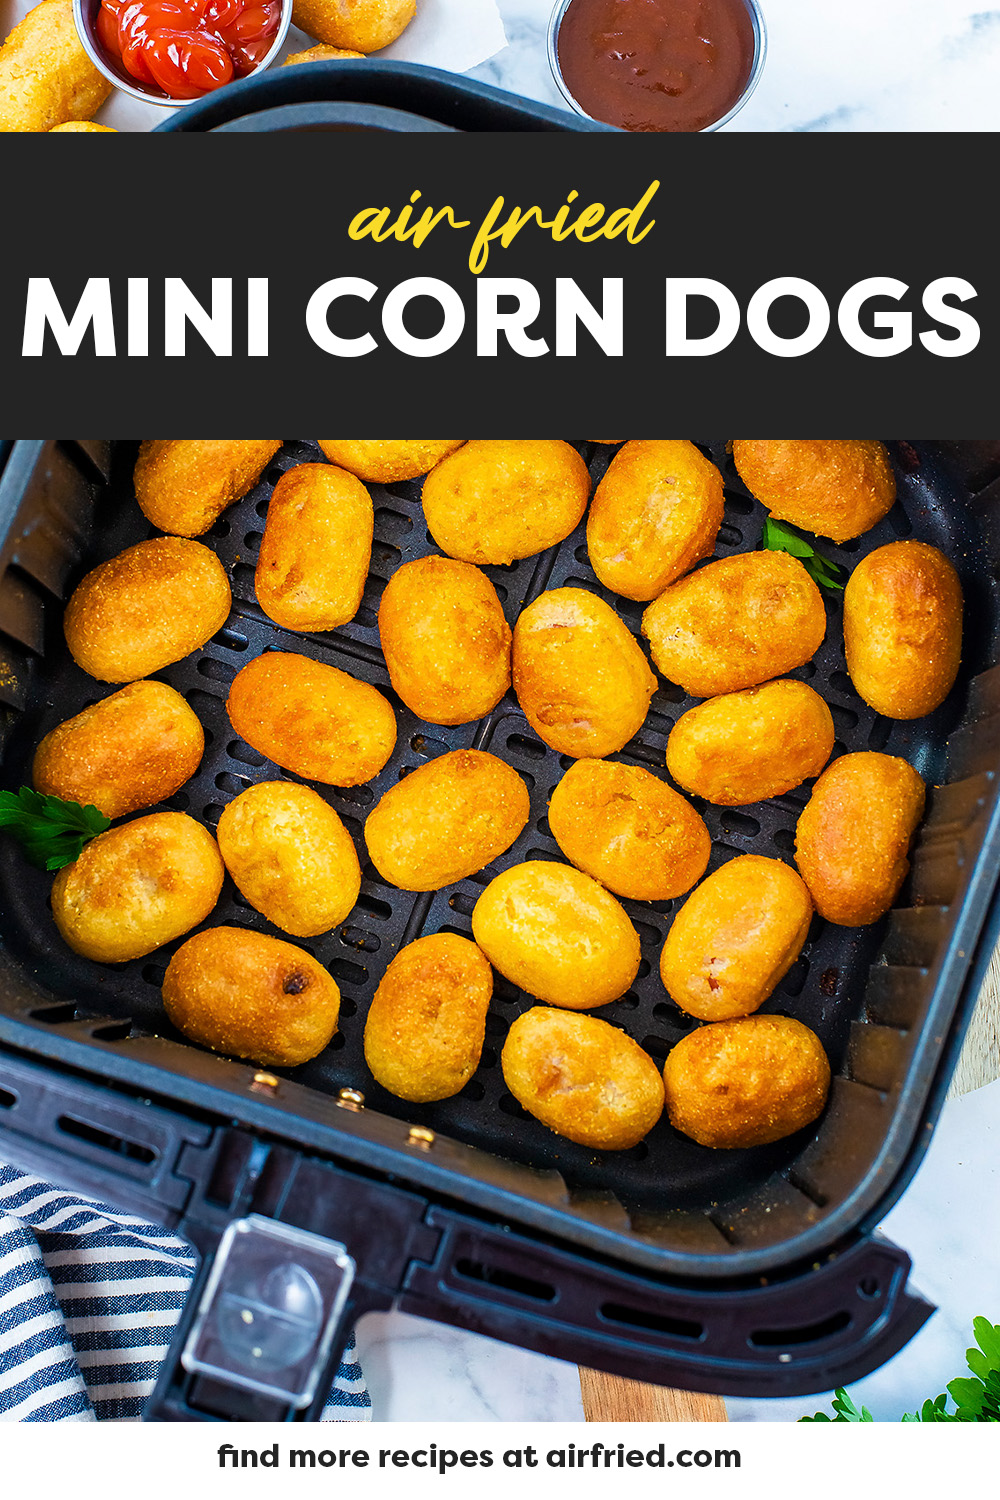 Mini corn dogs in air fryer basket.